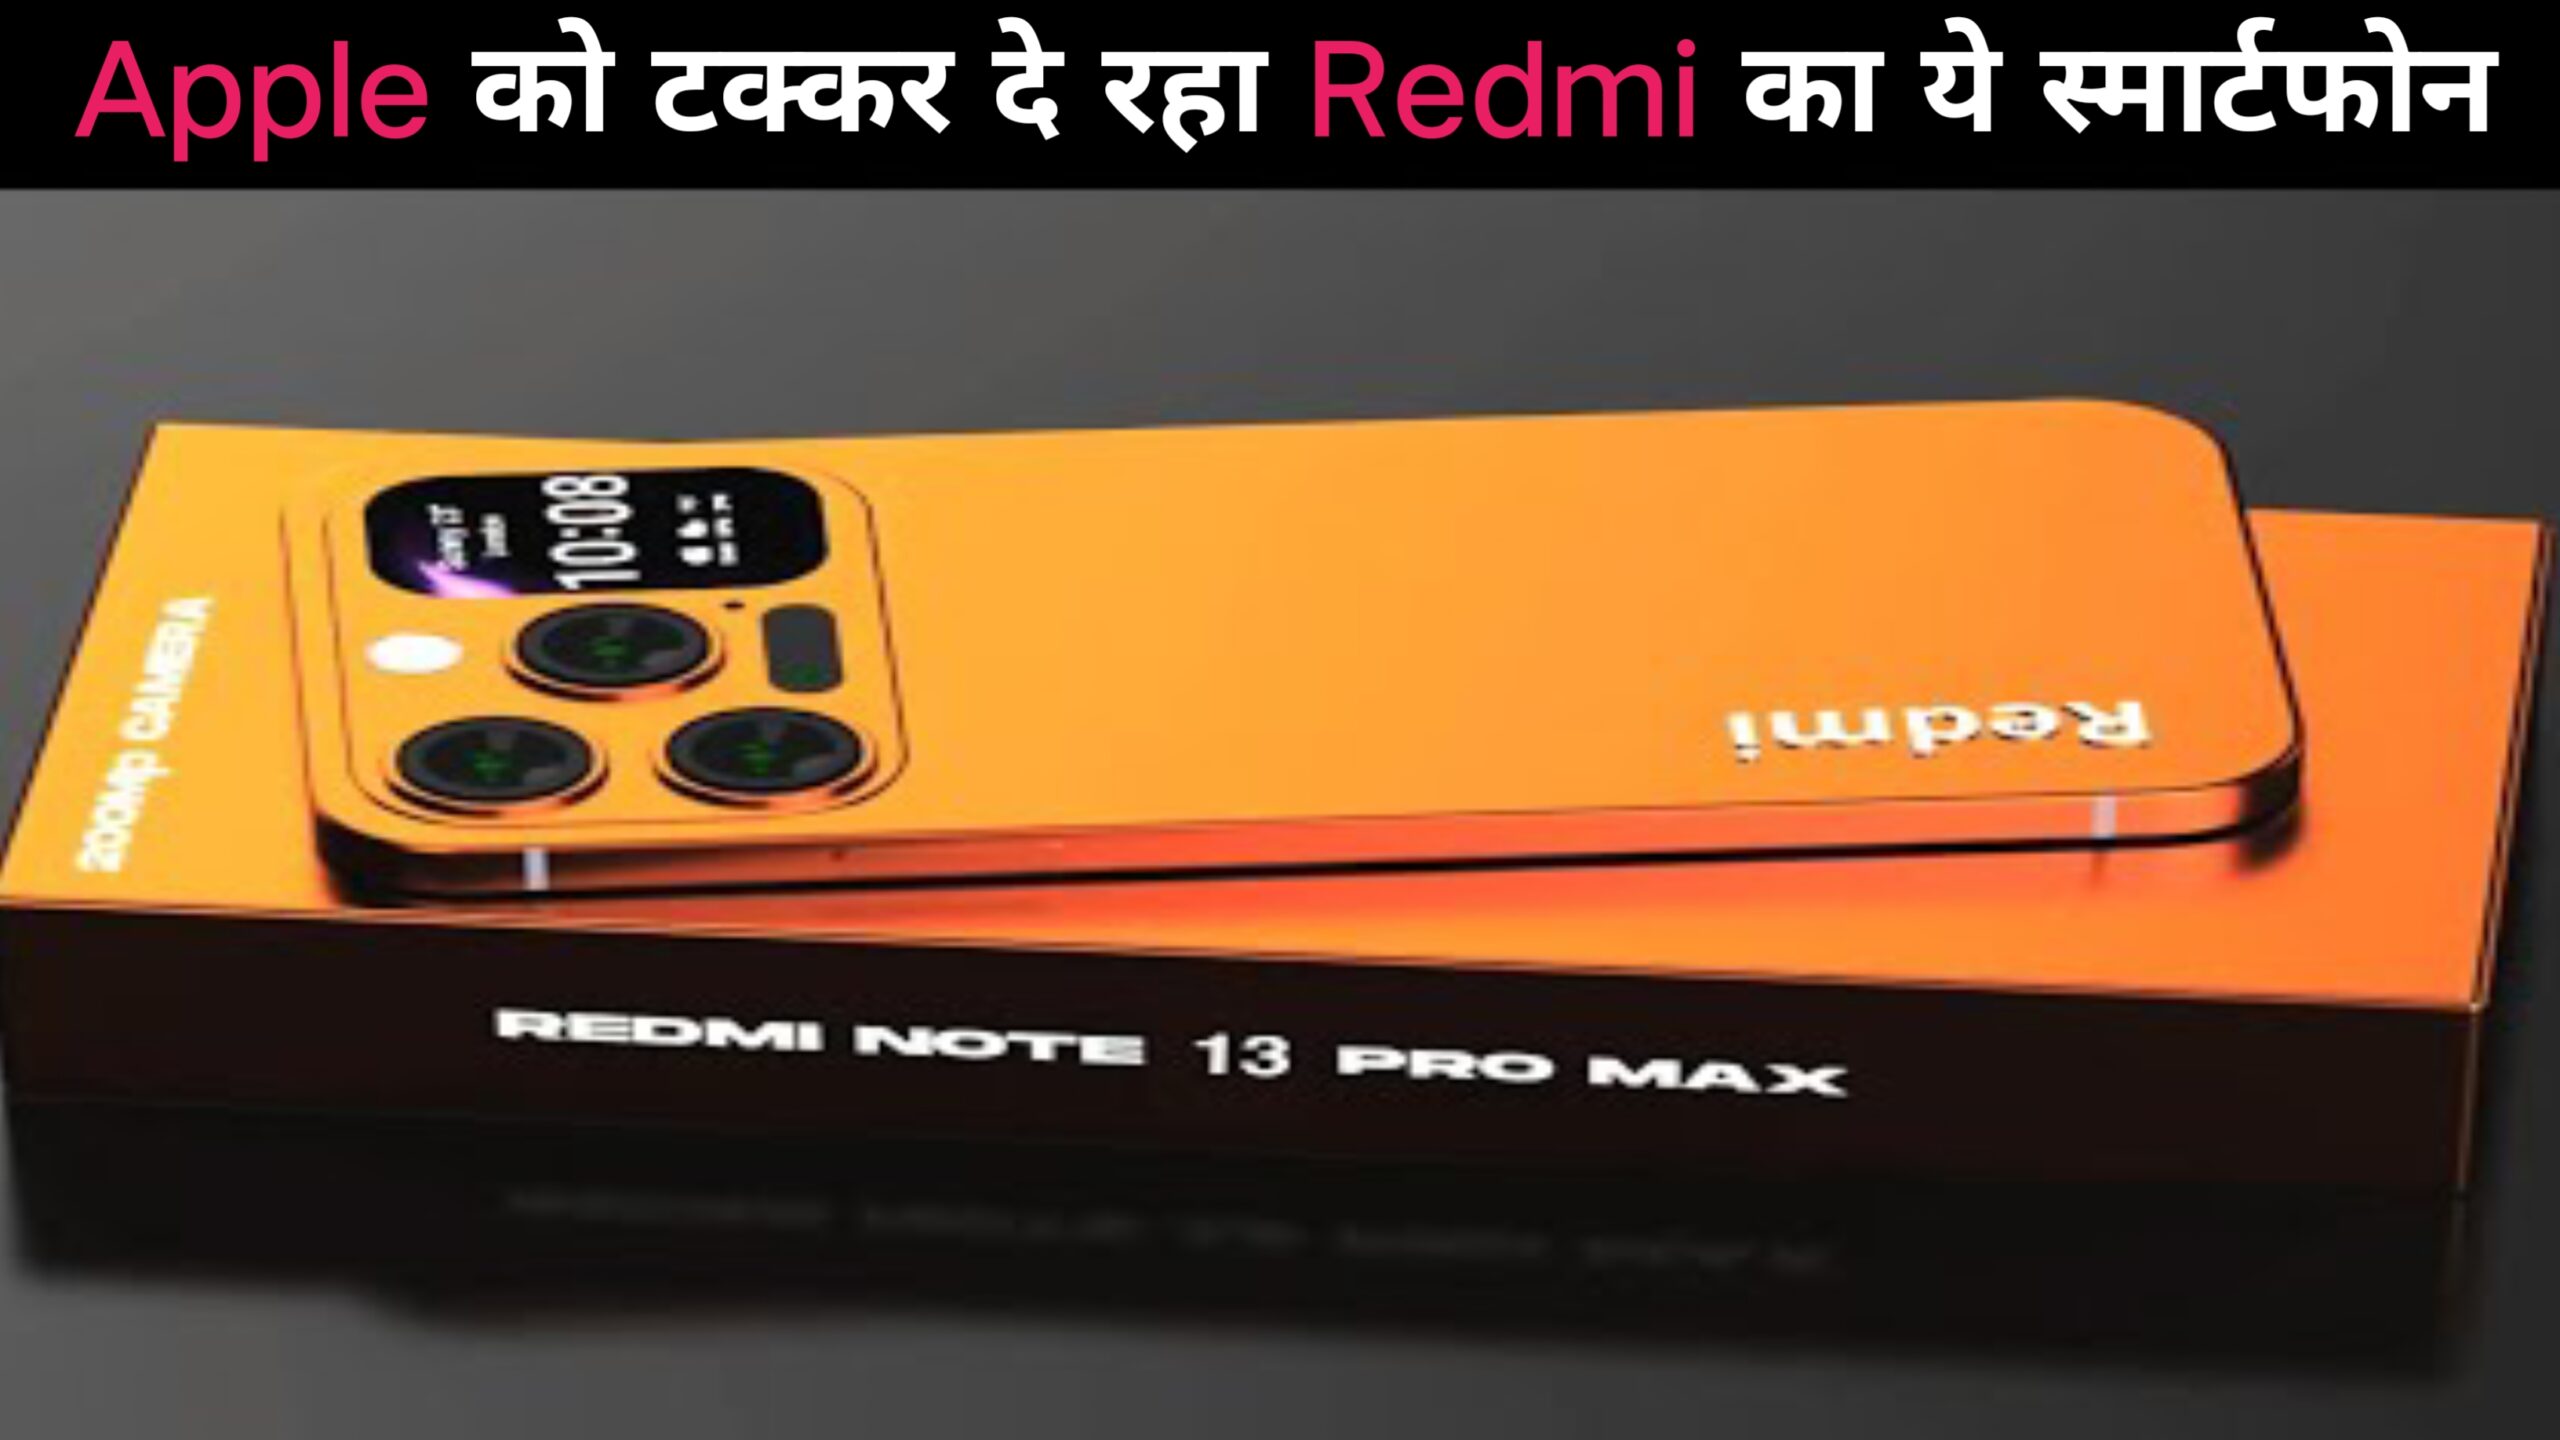 New Redmi Note 13 Pro Max